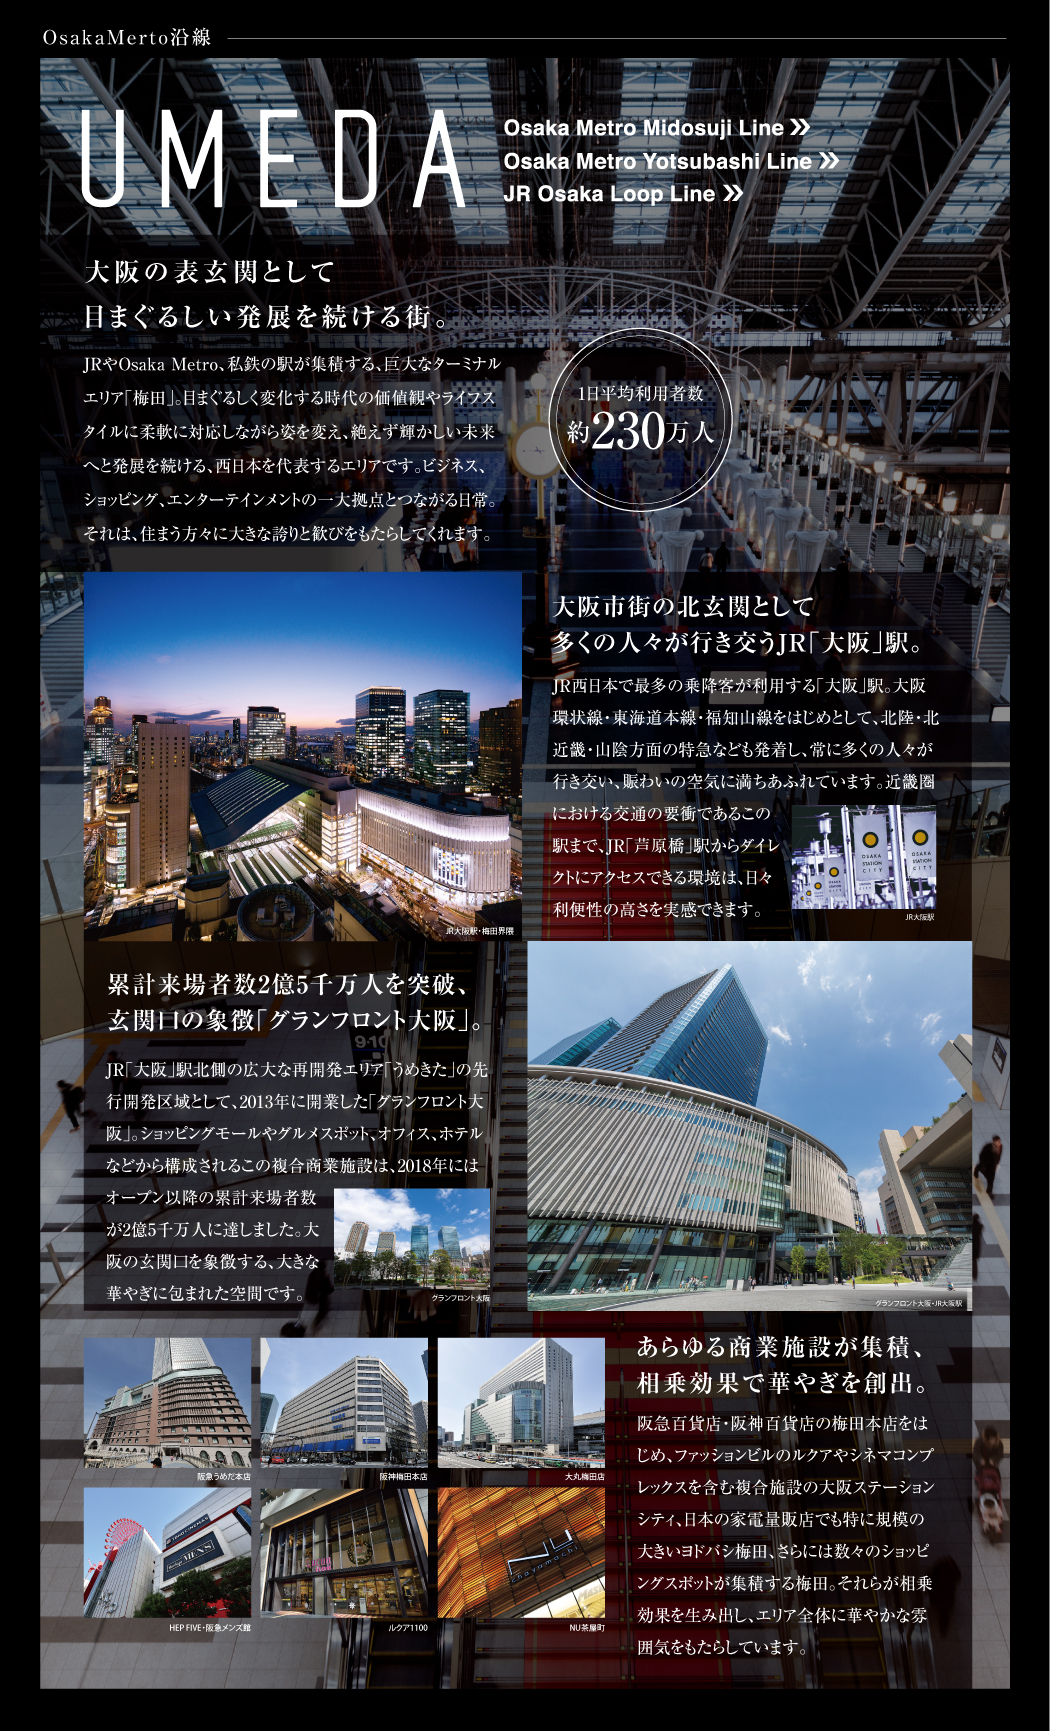 大阪の表玄関として目まぐるしい発展を続ける街。大阪市街の北玄関として多くの人々が行き交うJR「大阪」駅。累計来場者数2億5千万人を突破、眼科ん口の象徴「グランフロント大阪」。あらゆる商業施設が集結、相乗効果で華やぎを創出。